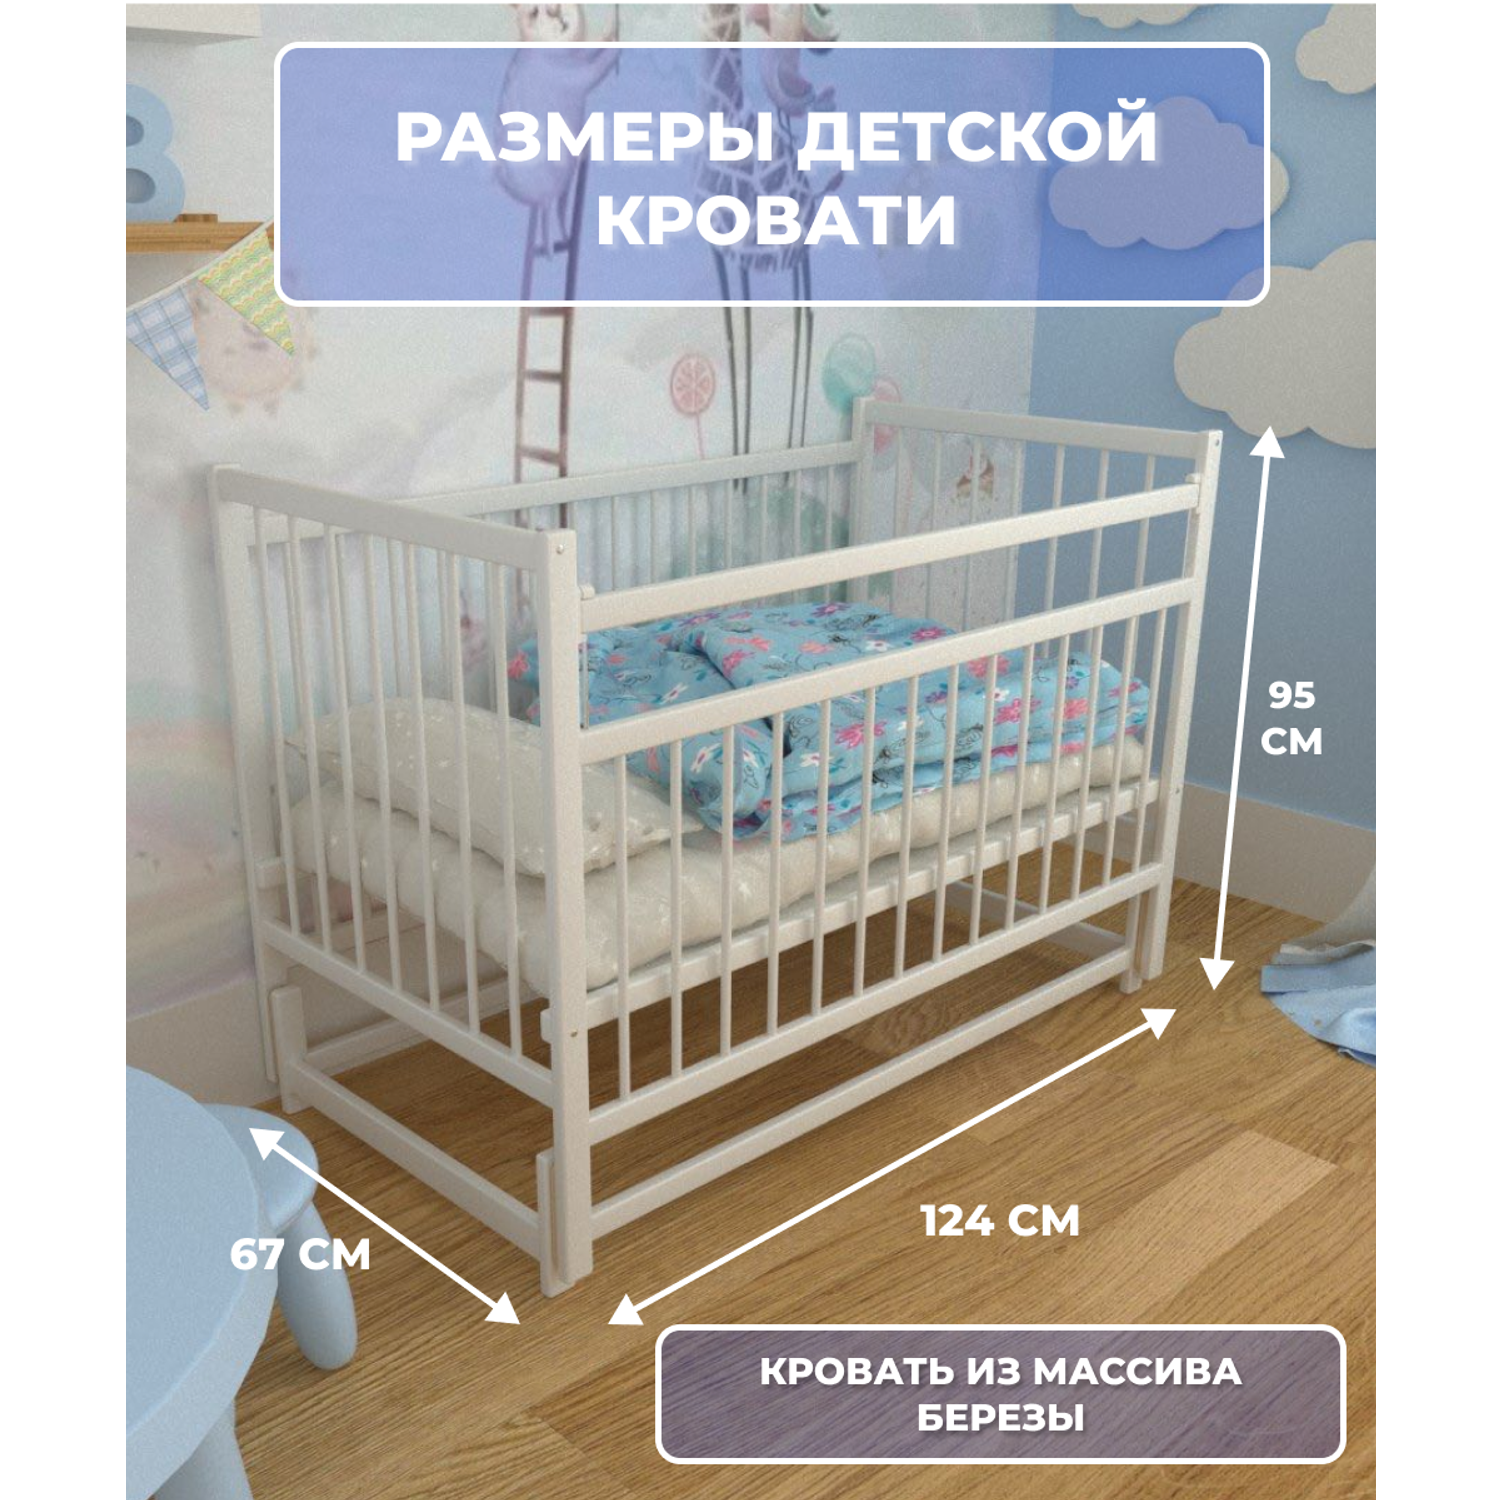 Детская кроватка Moms charm NovBelsmayatnikom, продольный маятник (белый) - фото 3